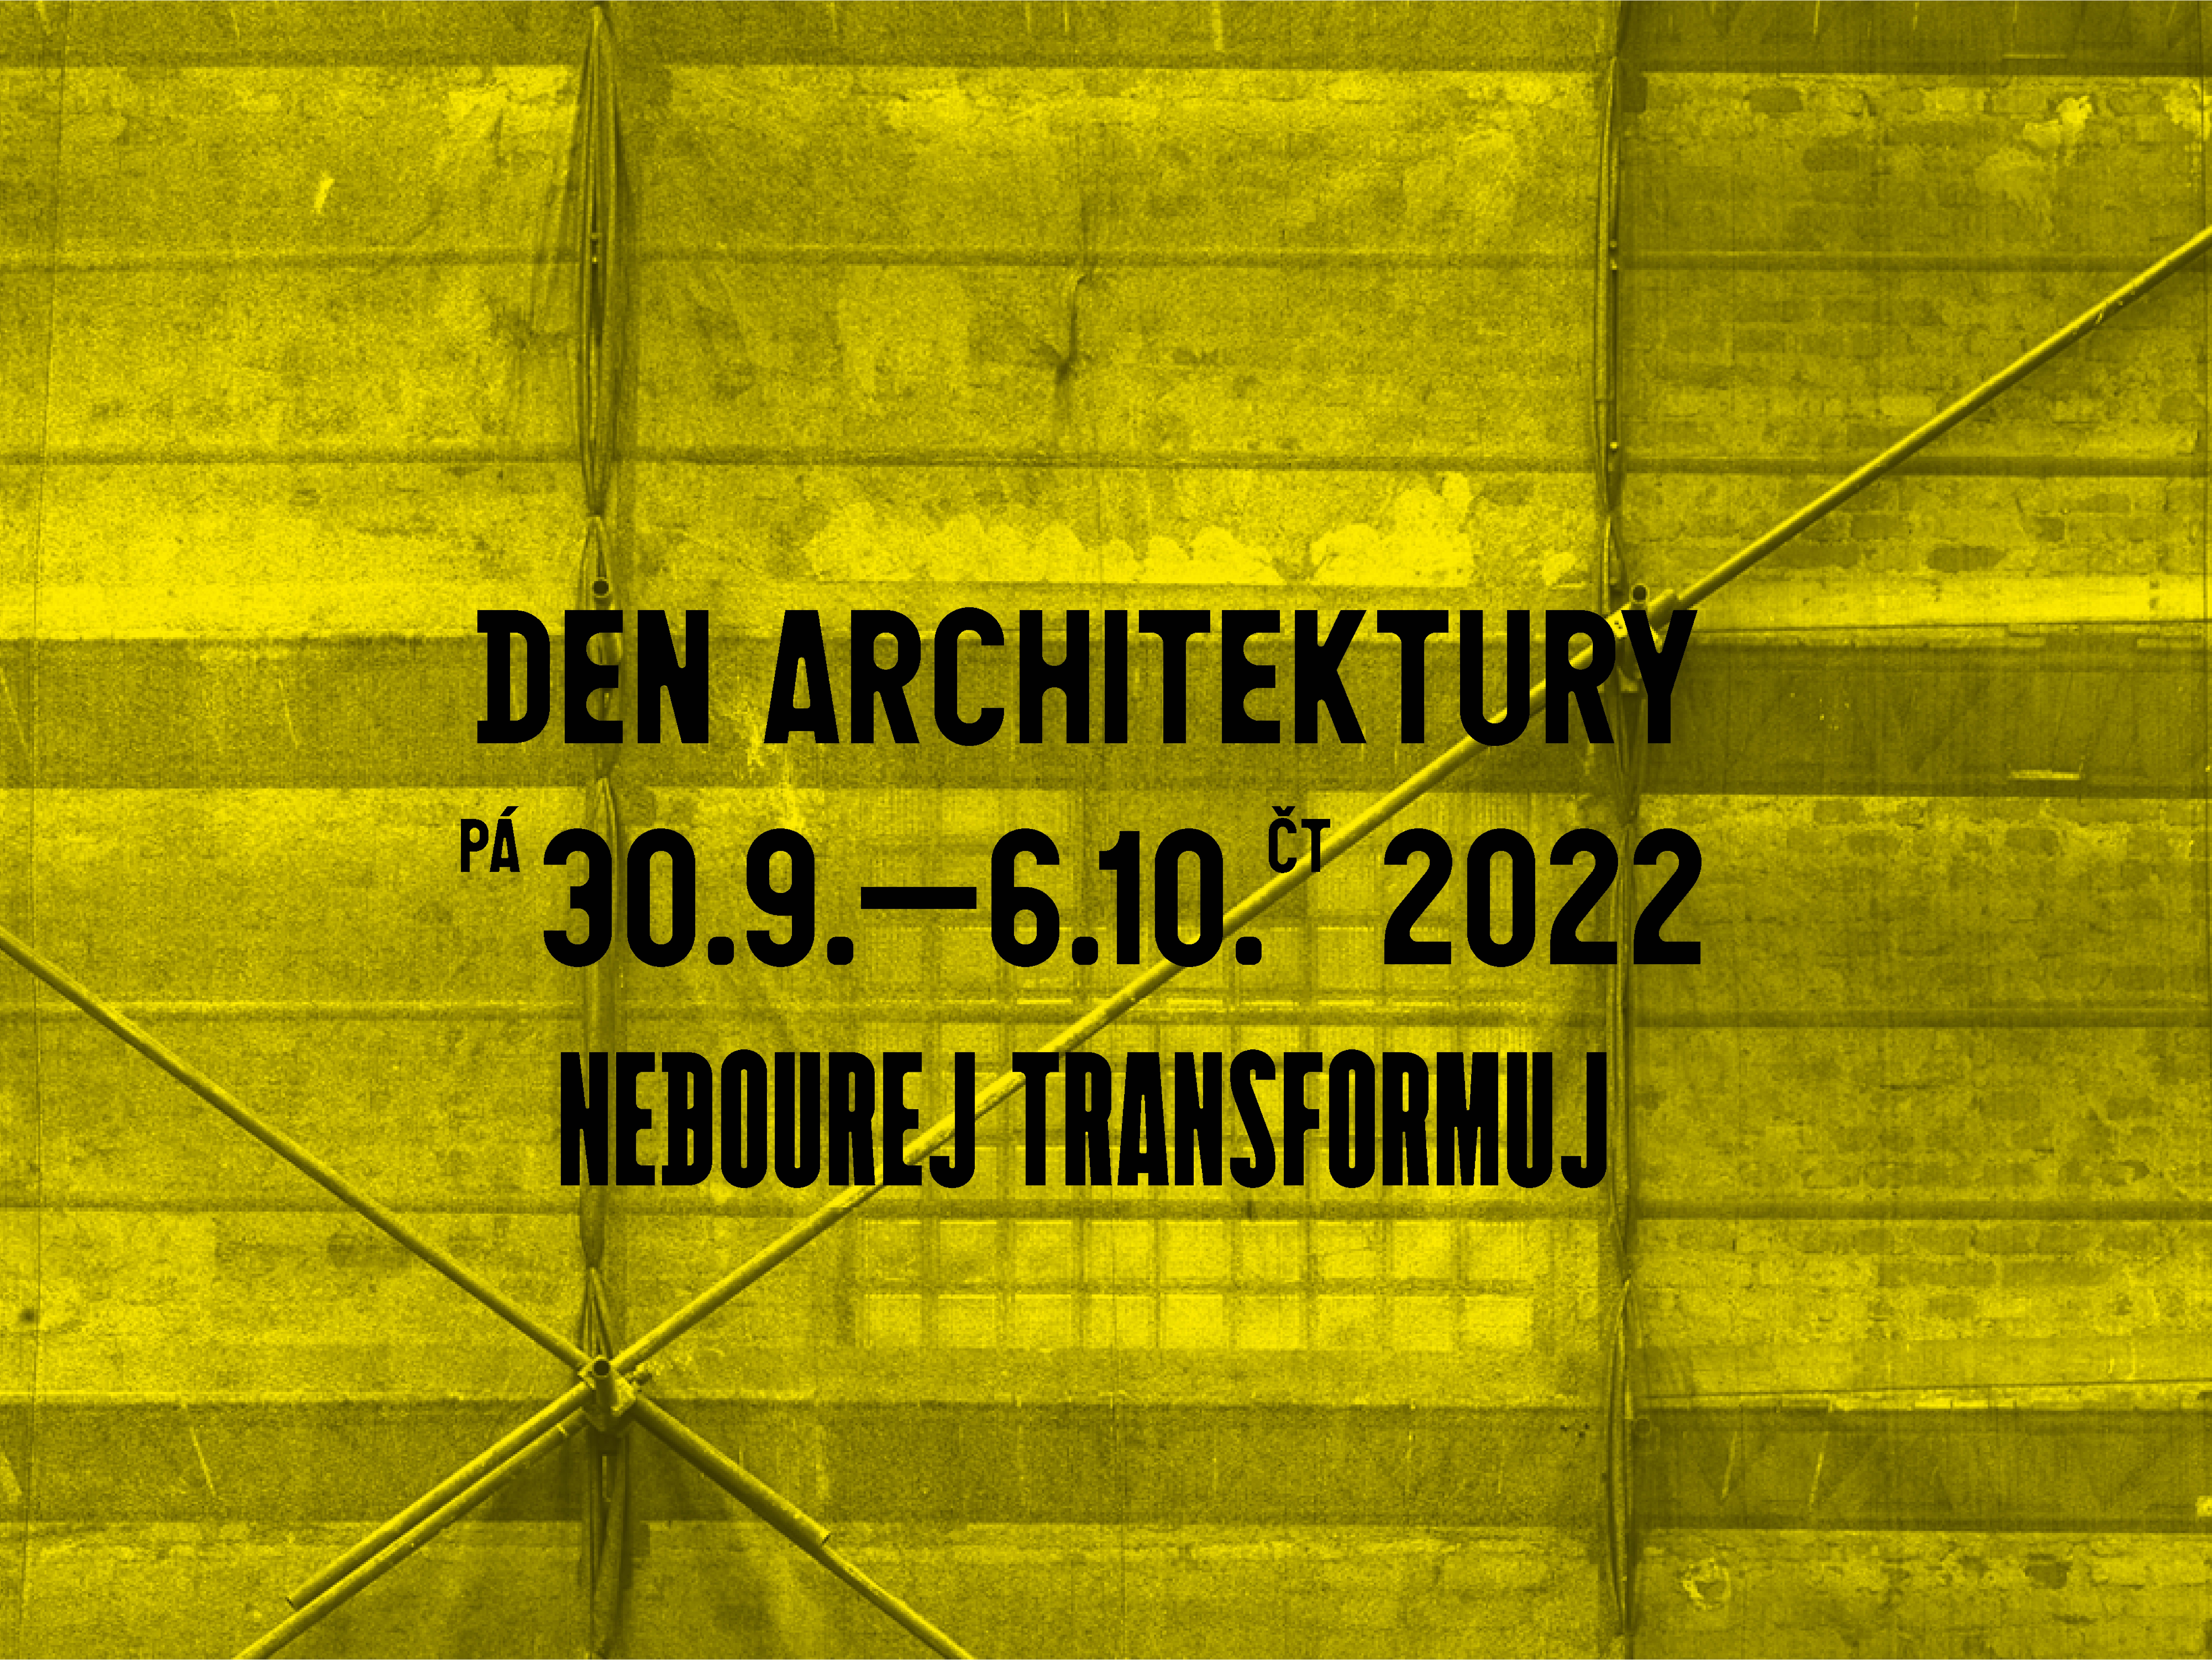 DEN ARCHITEKTURY 2022